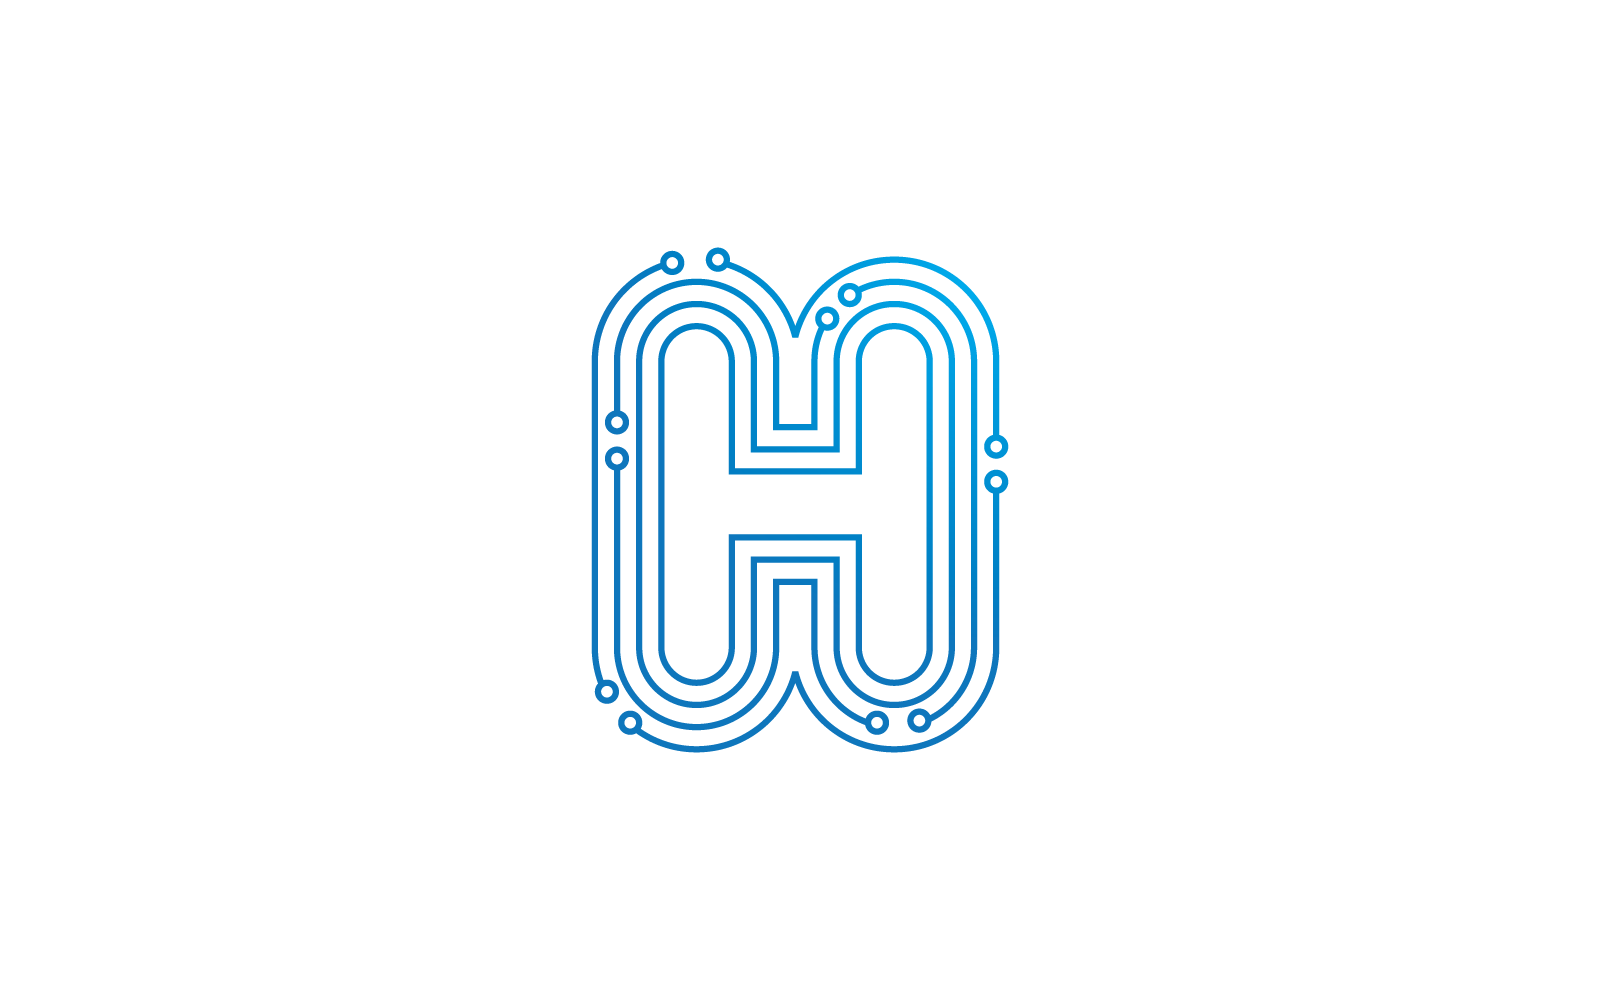 H lettre initiale circuit technologie illustration logo modèle vectoriel